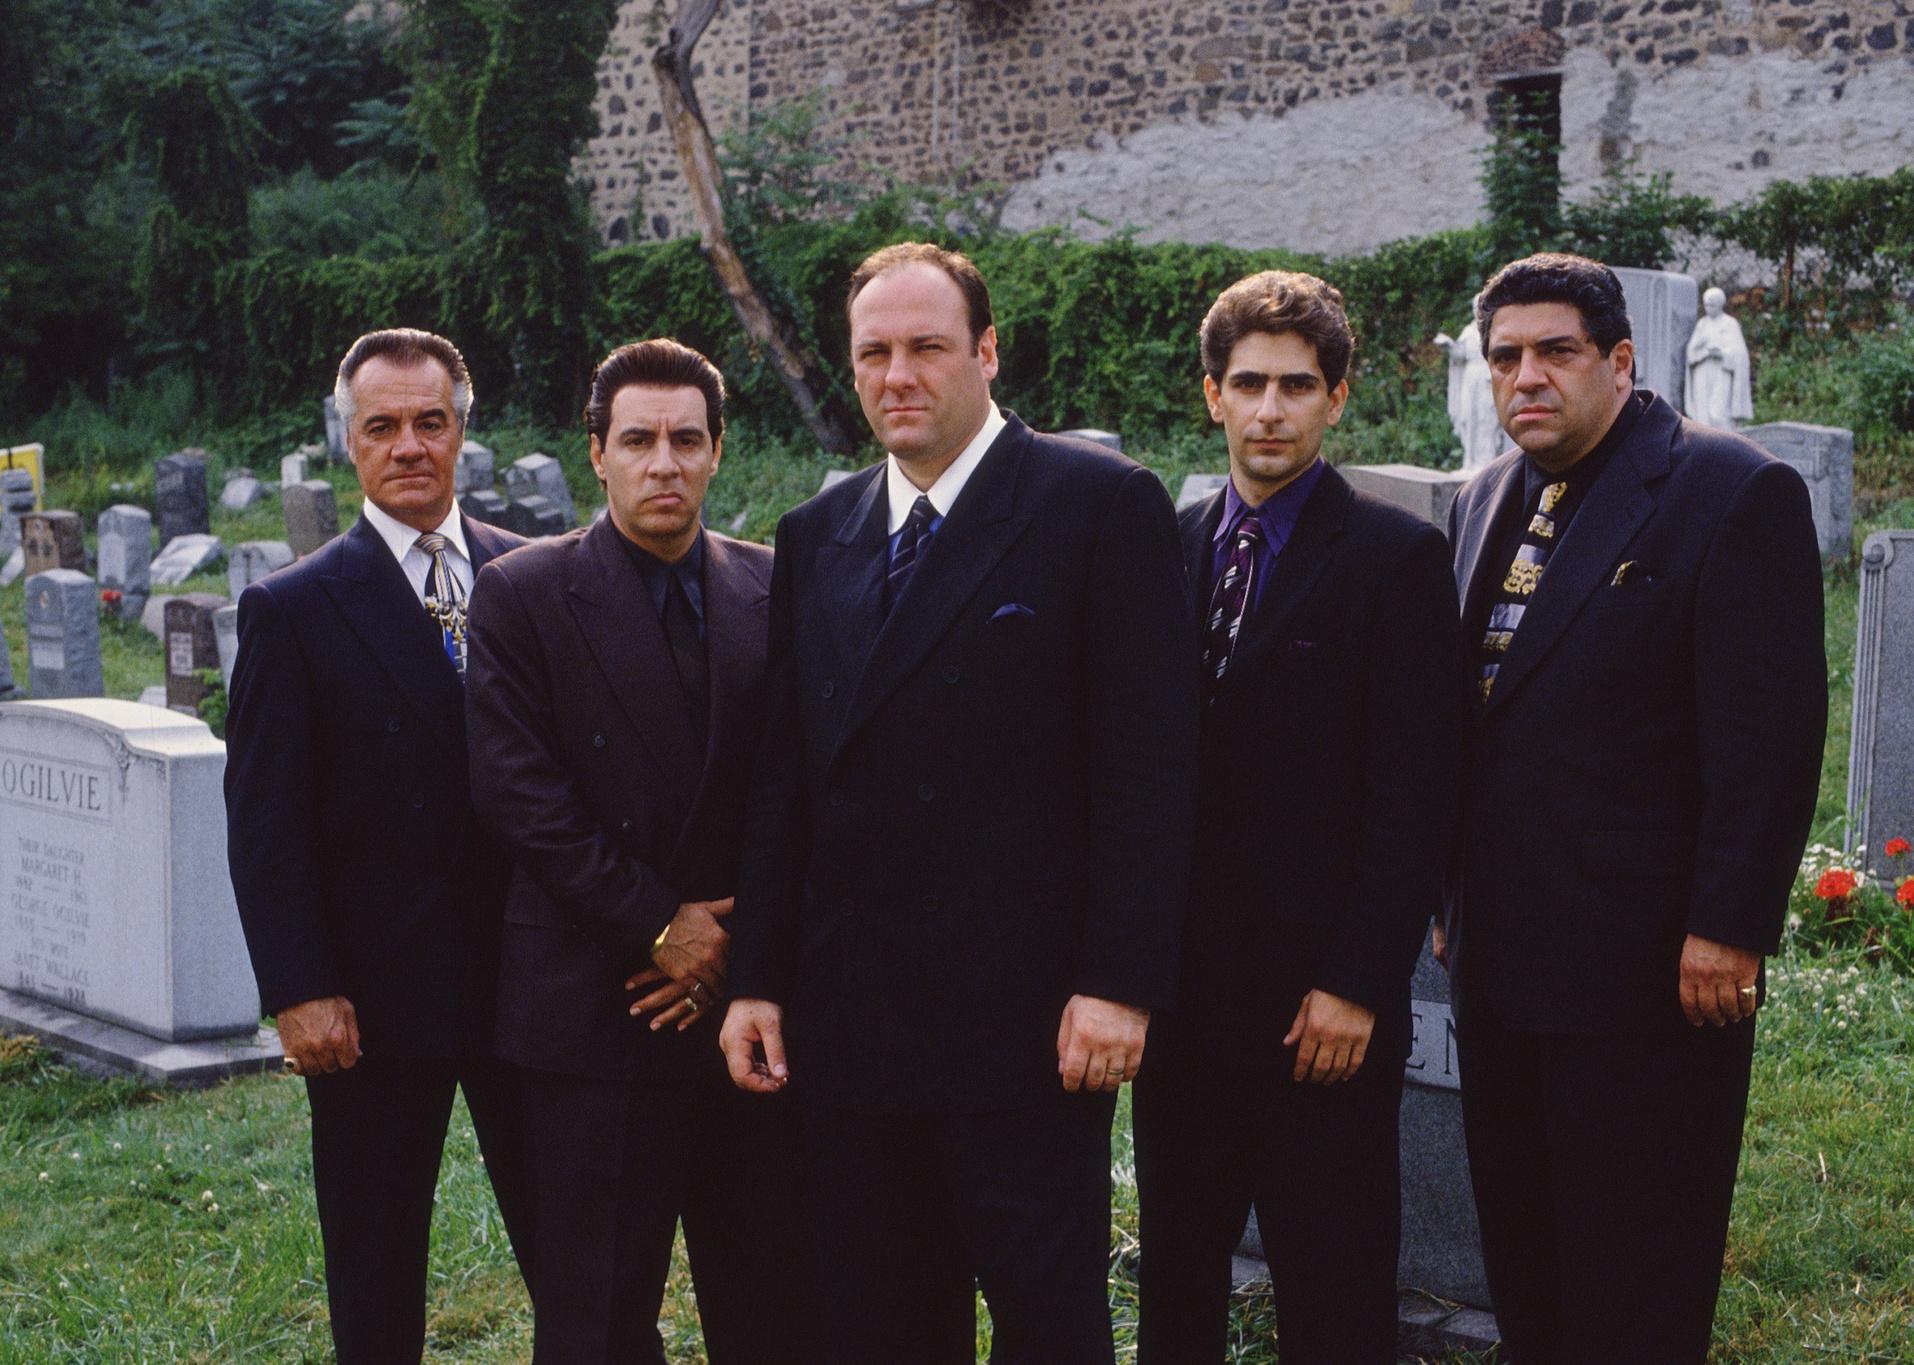 Tony Sirico, Vincent Curatola, James Gandolfini, Michael Imperioli and Silvio Dante at a cemetery.